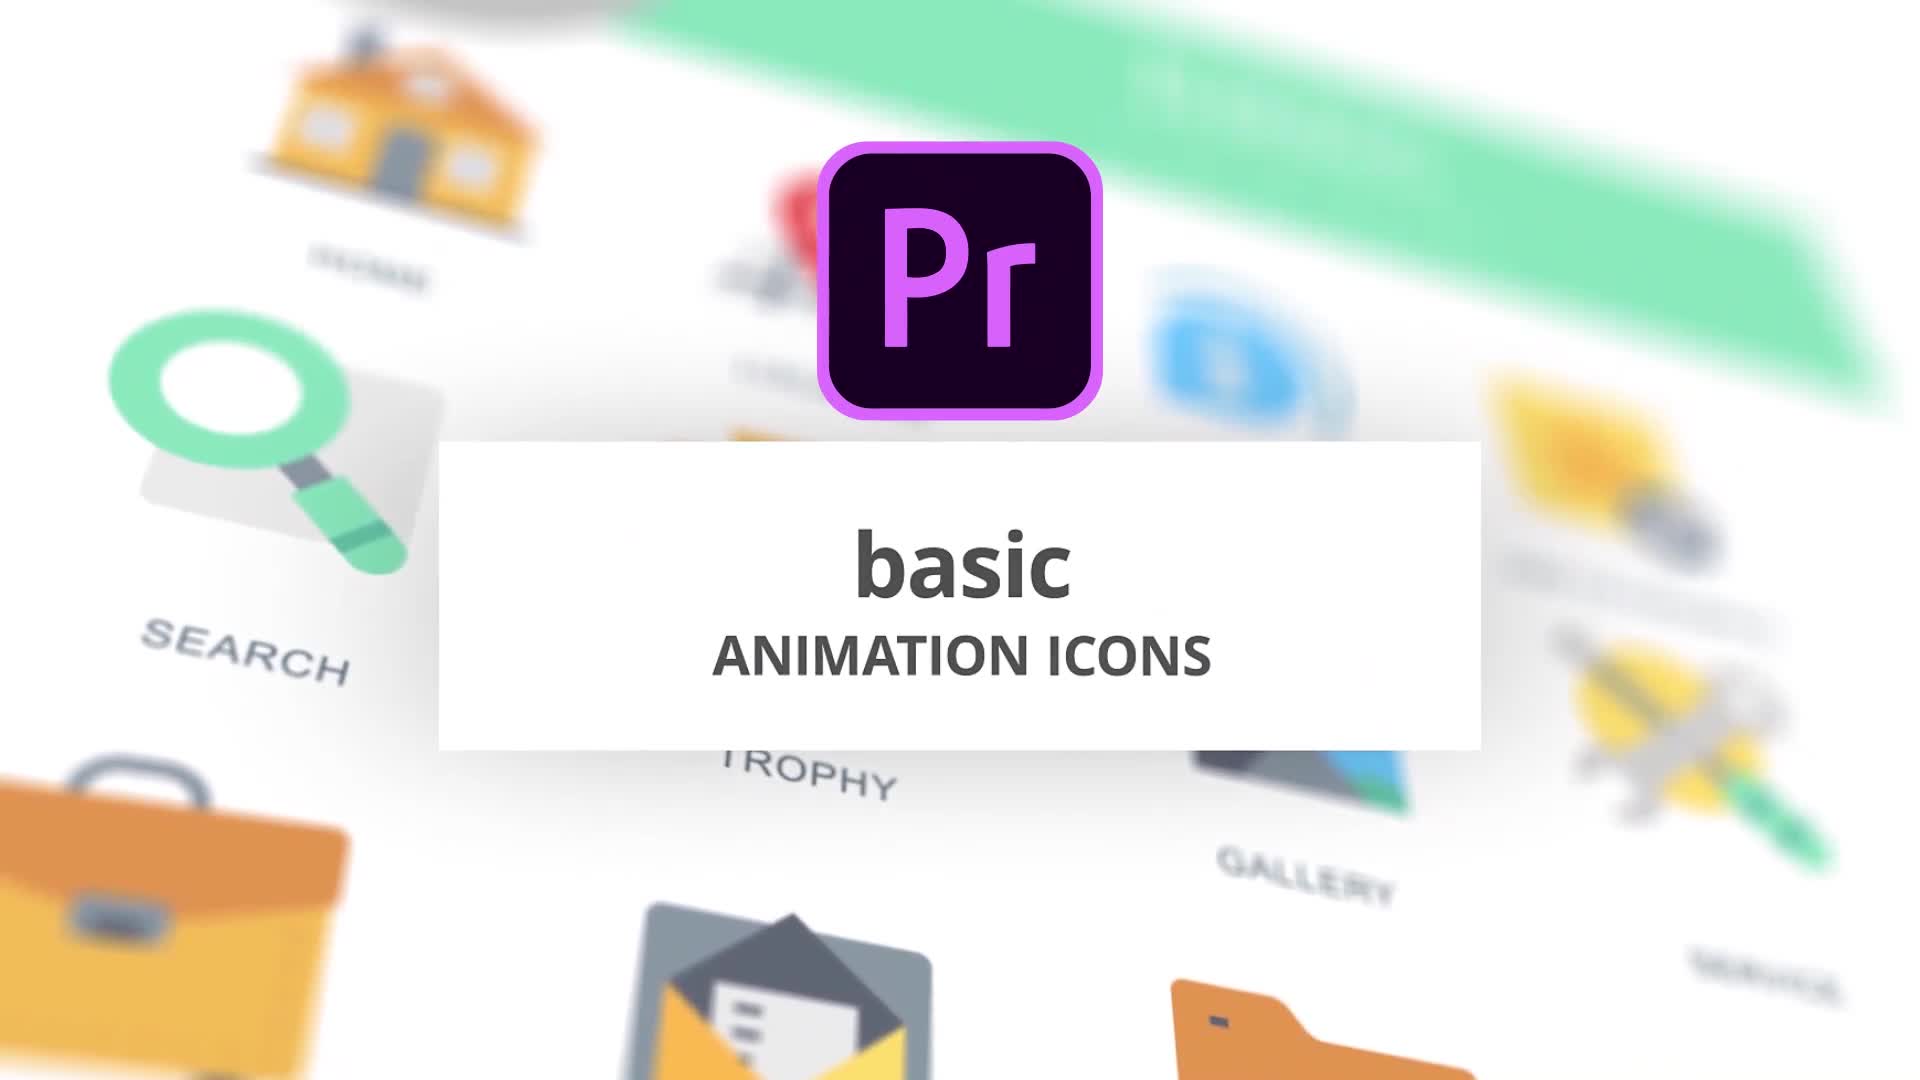 Basic Animation Icons (MOGRT) Videohive 26755153 Premiere Pro Image 1